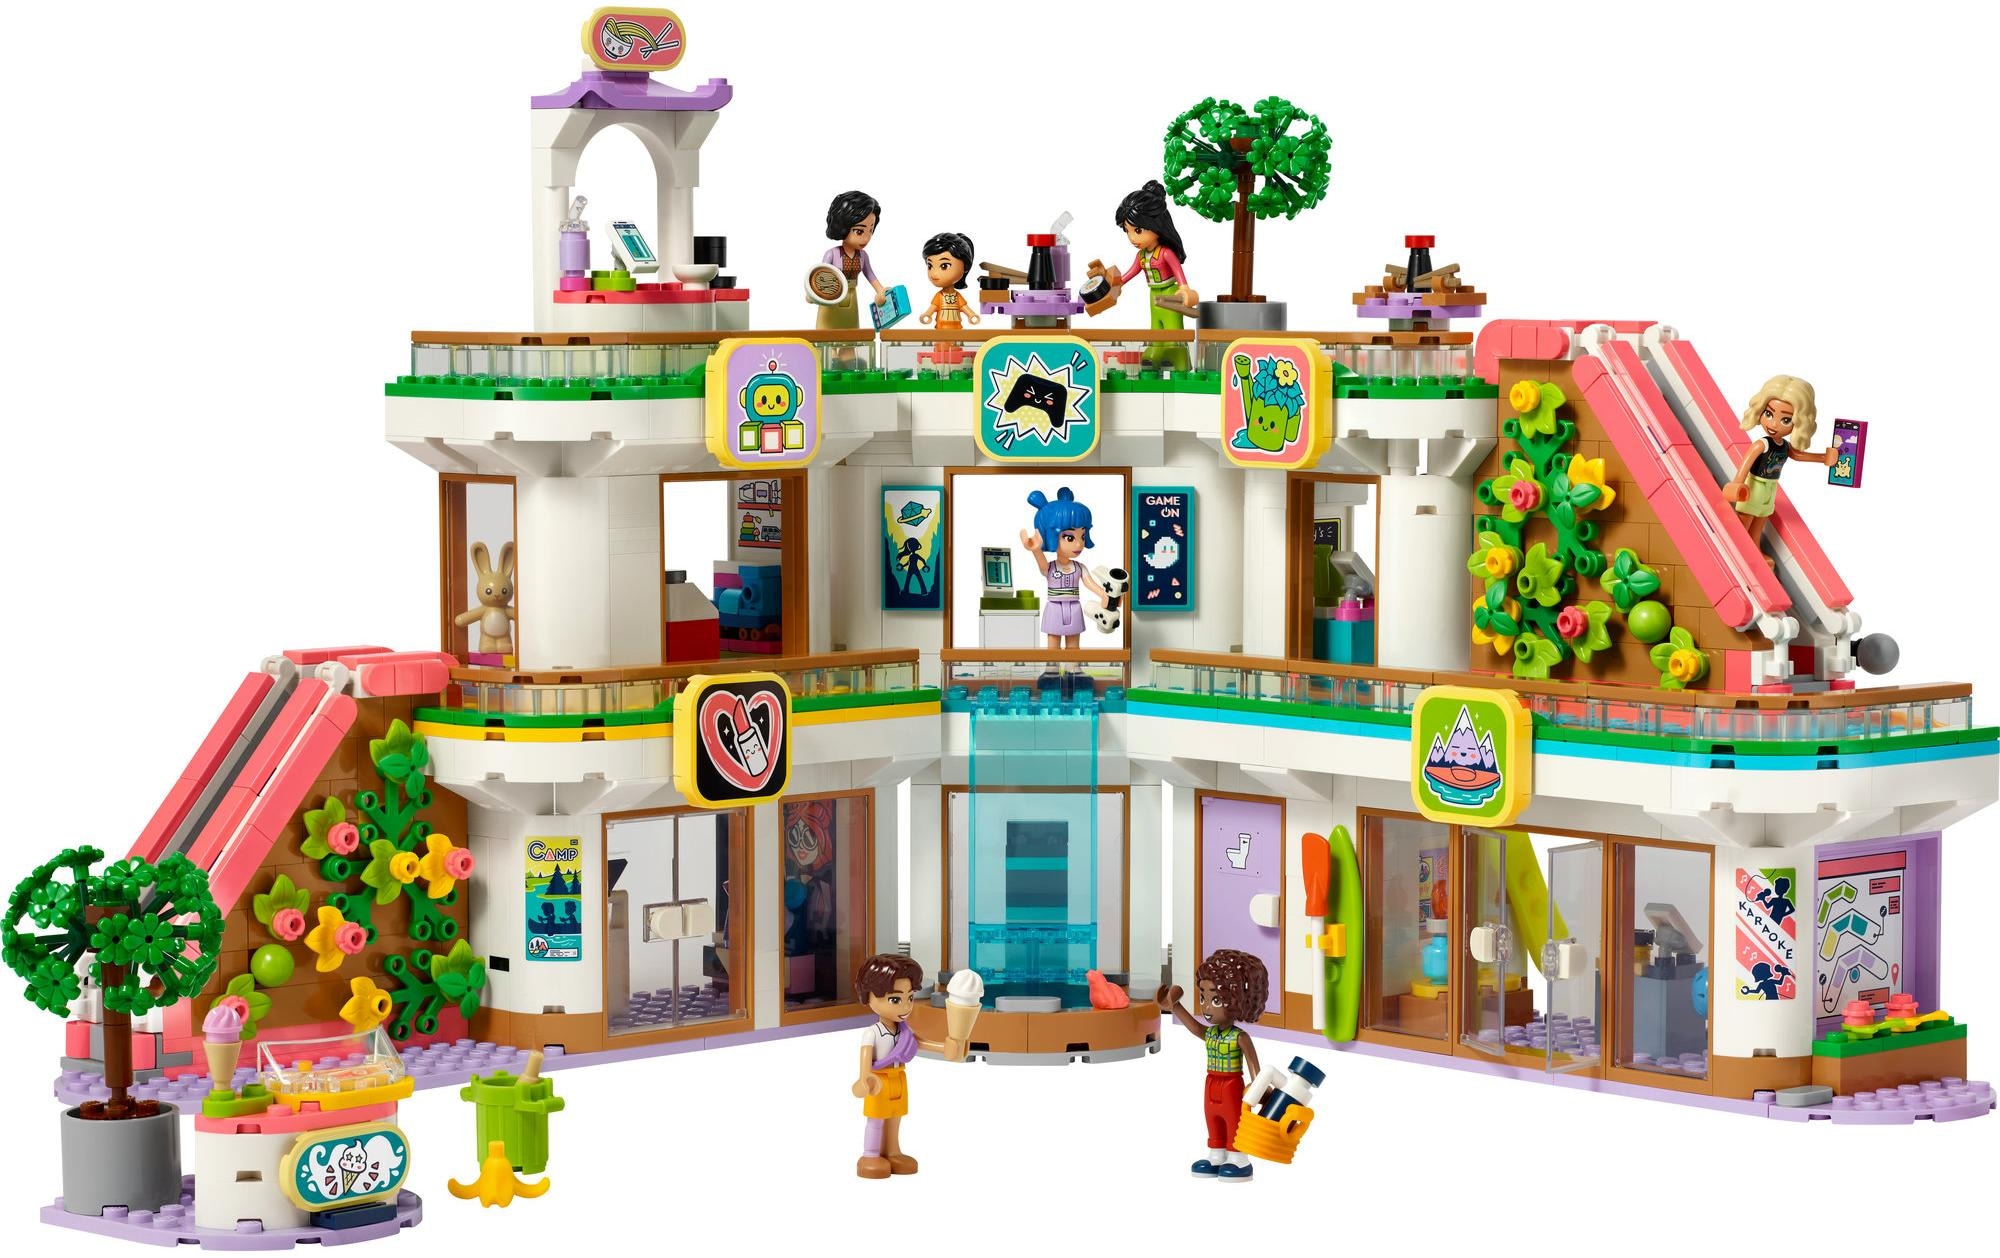 LEGO® Spielbausteine »Heartlake City Kaufhaus 42604«, (1237 St.)